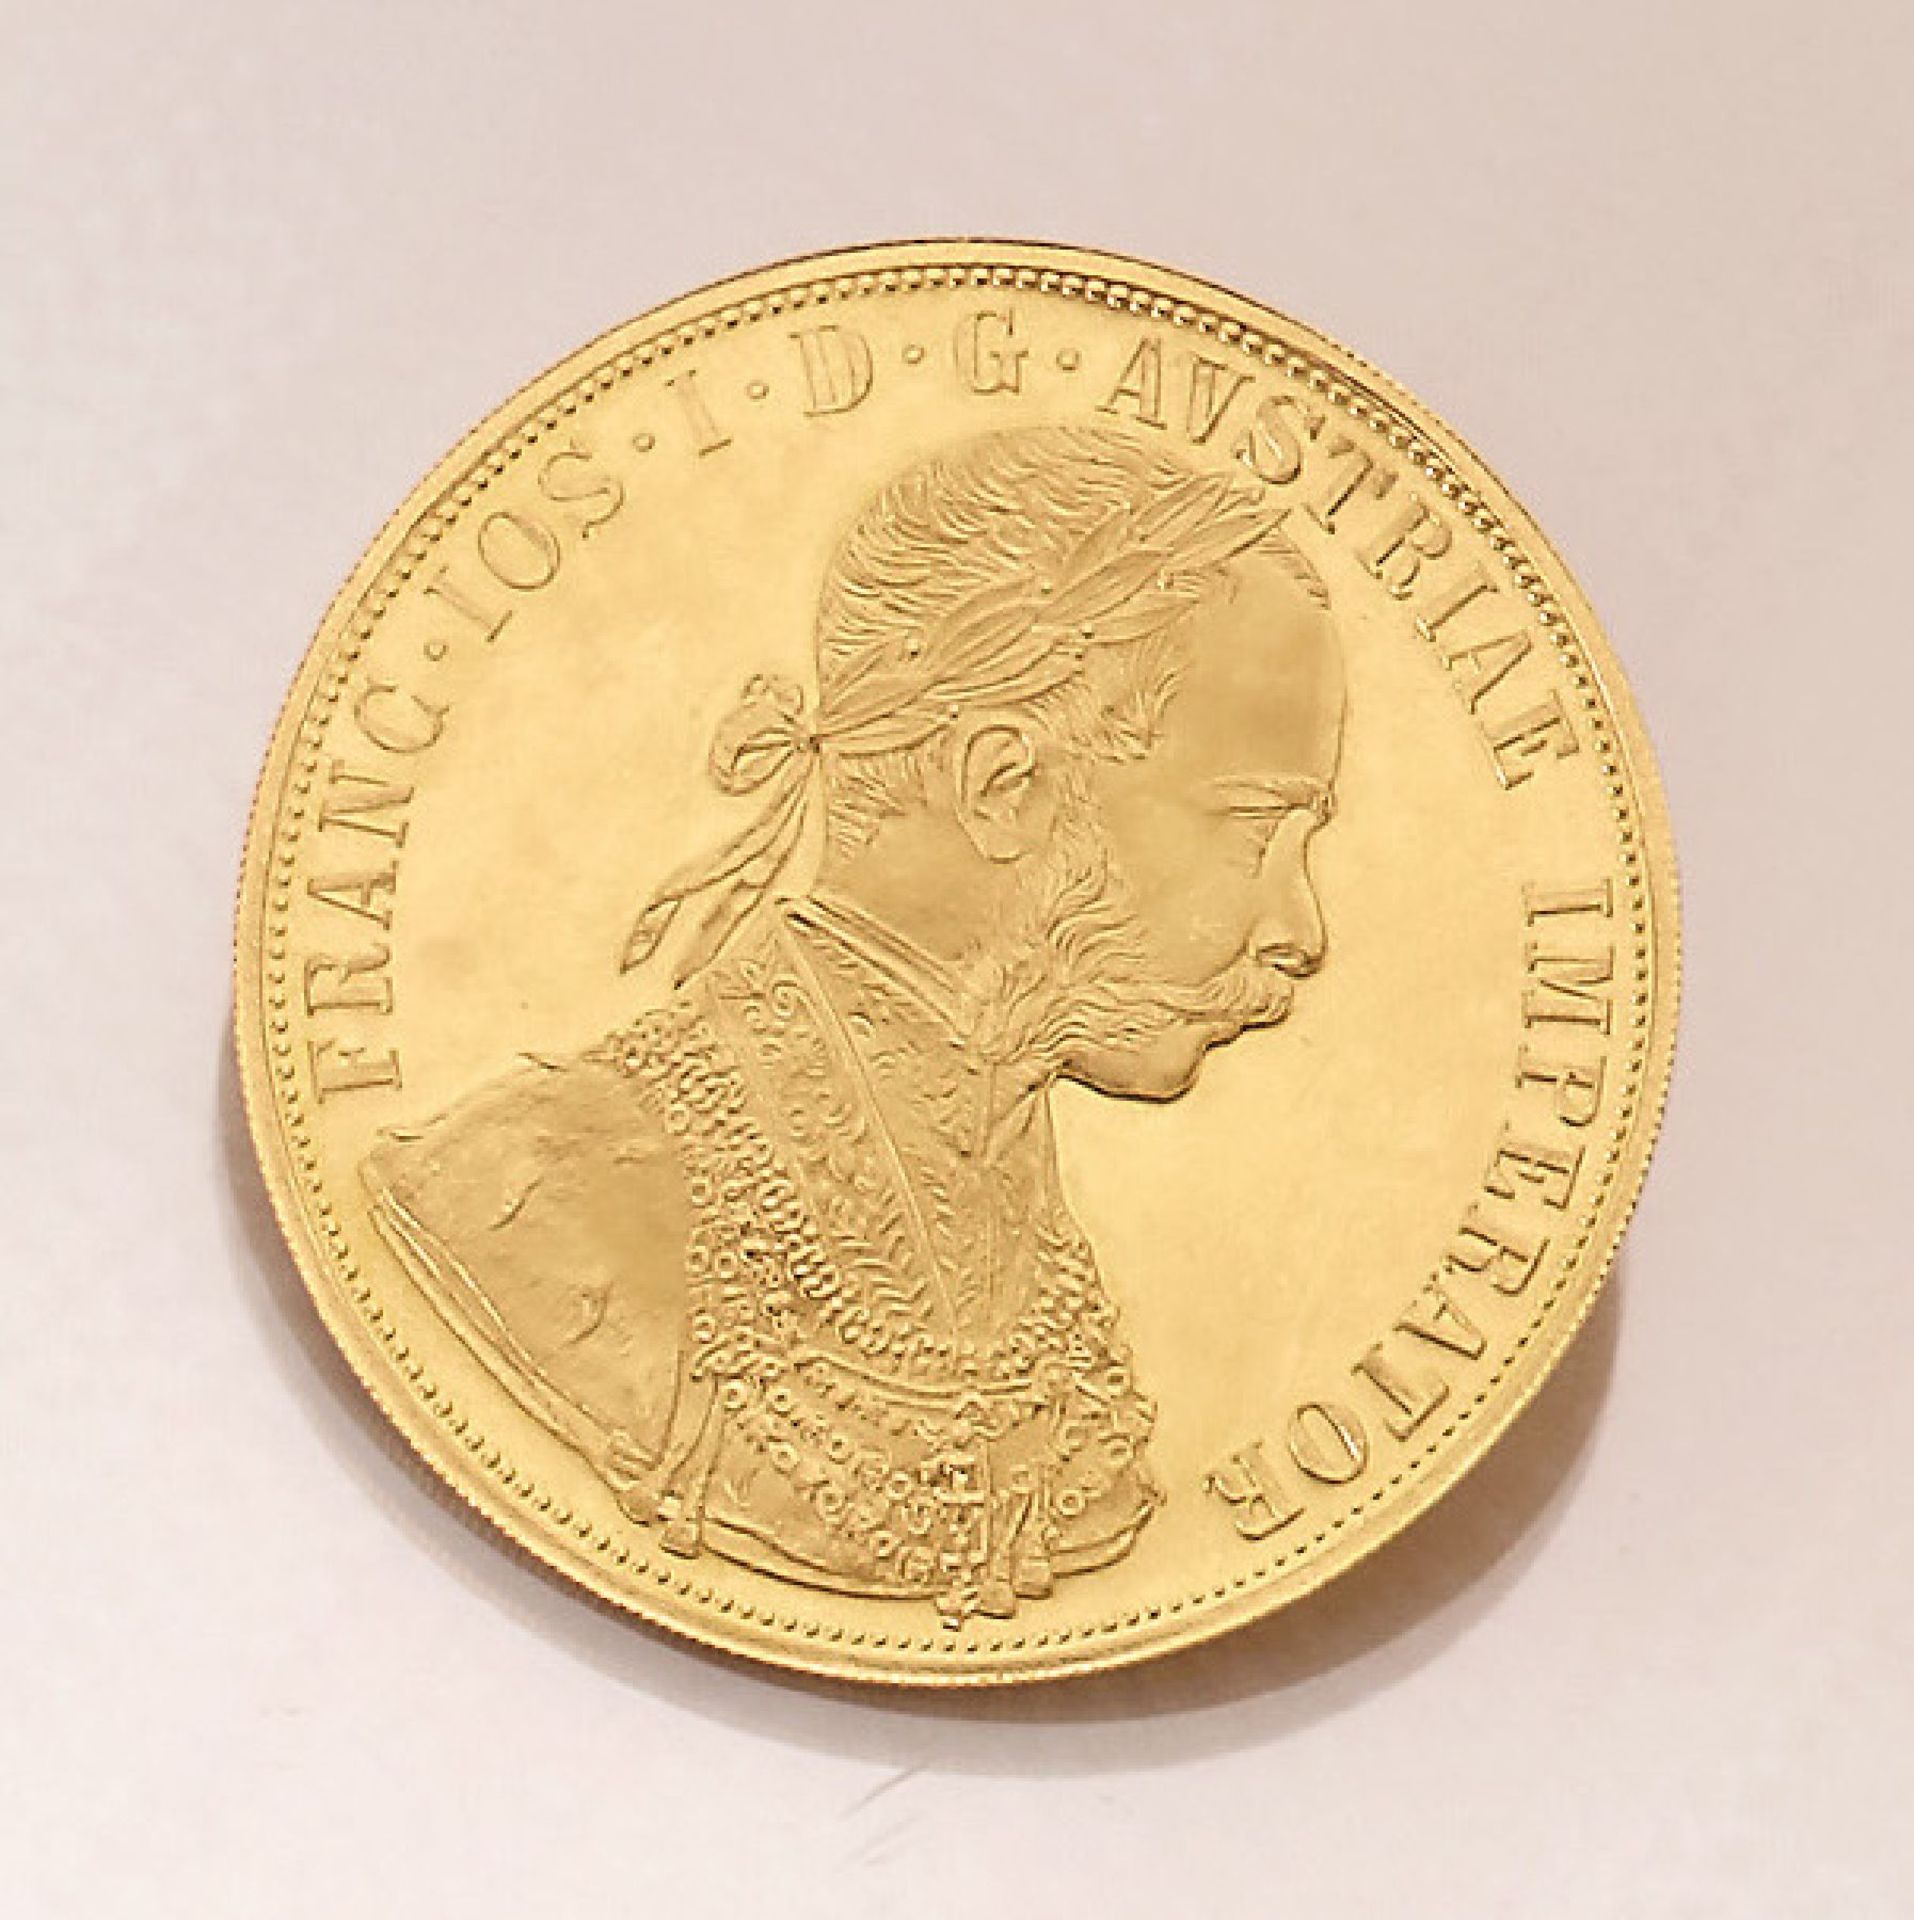 Goldmünze, 4 Dukaten, Österreich-Ungarn, 1915, Franz Joseph I., offizielle Nachprägung